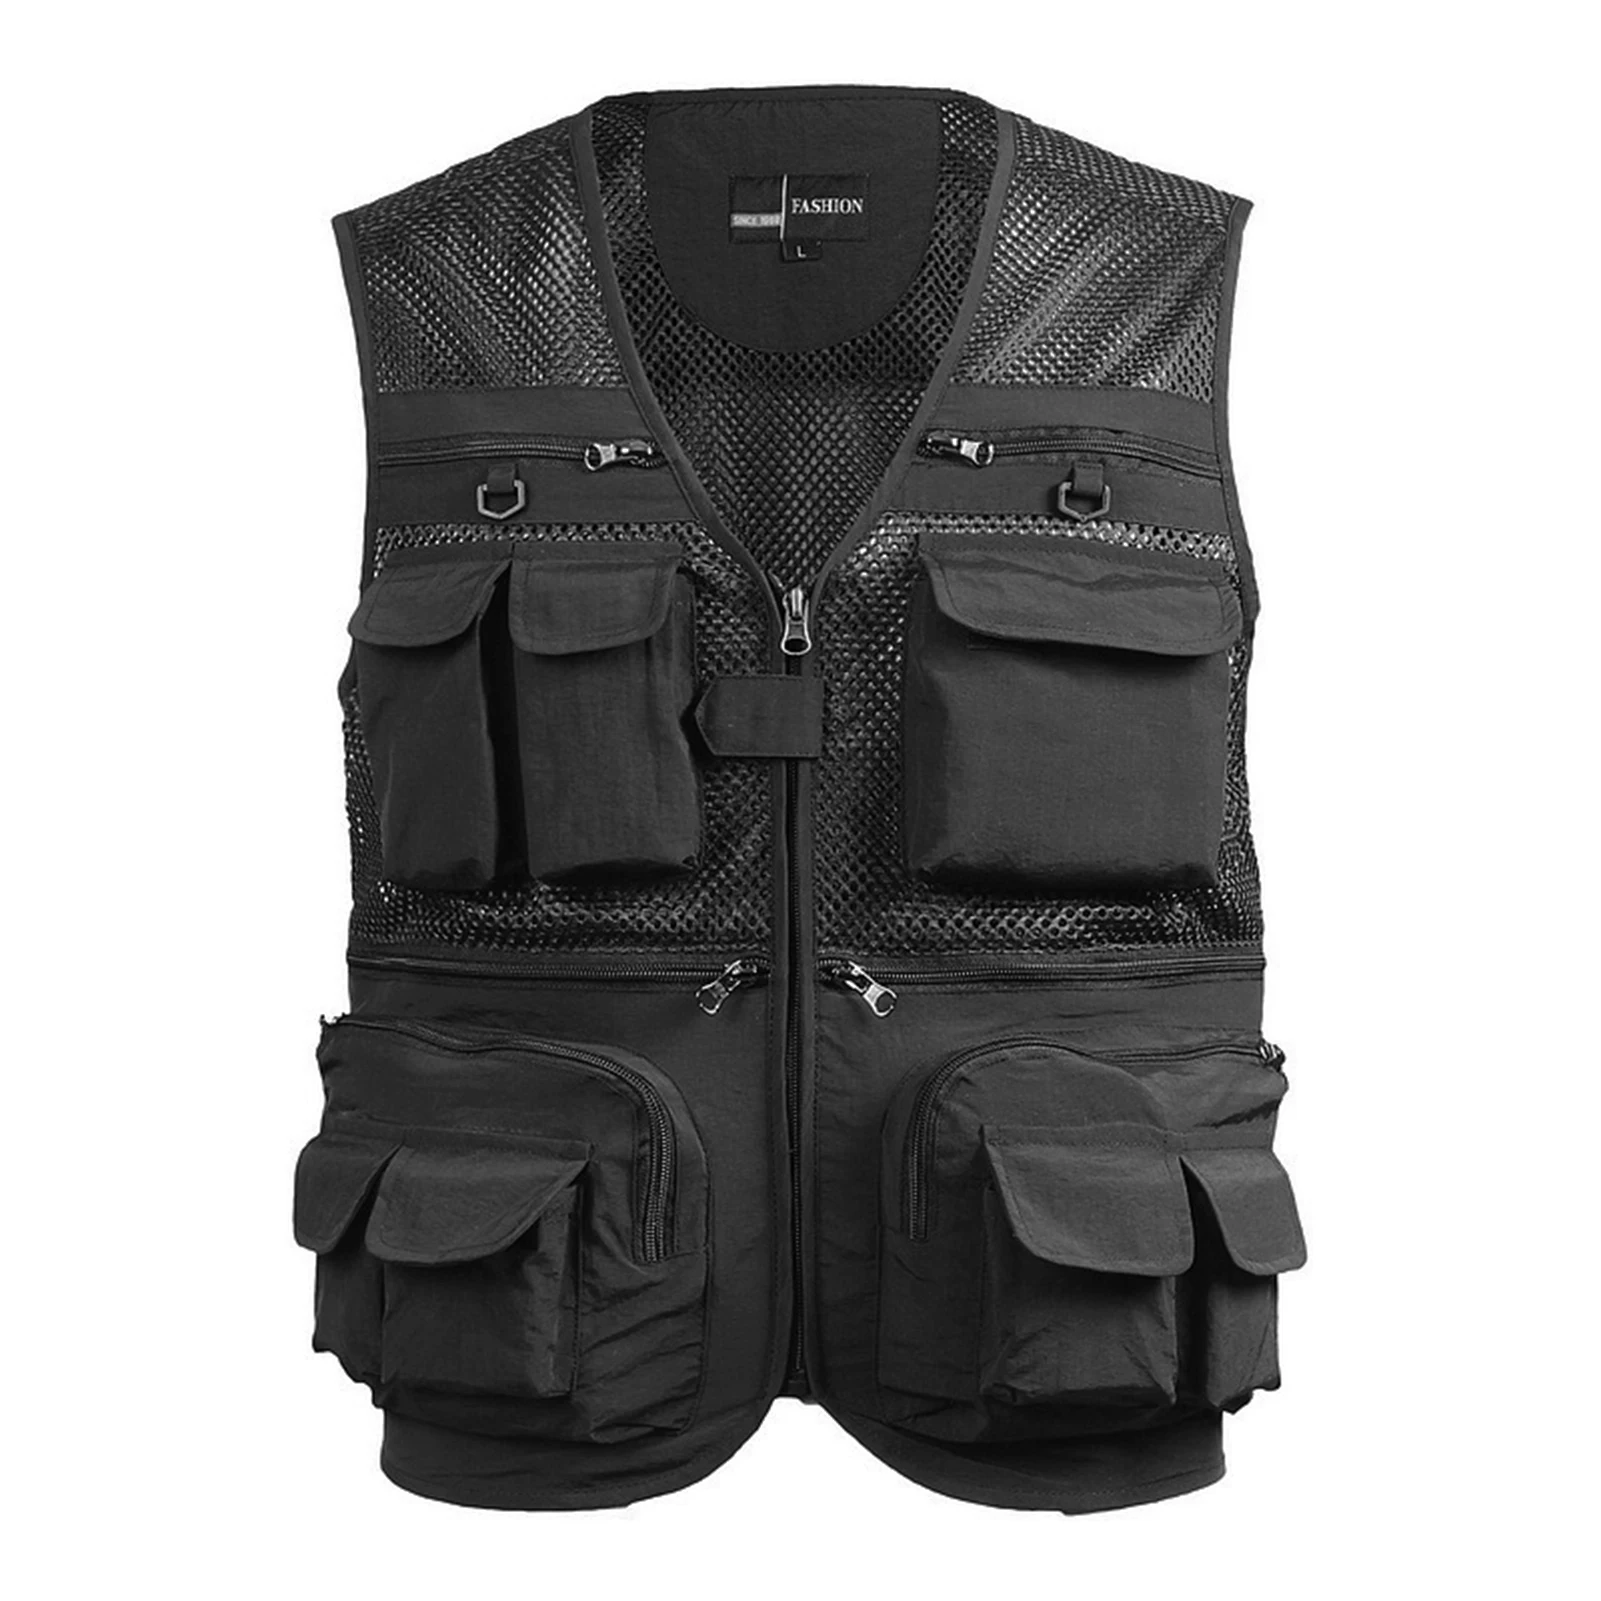 Fishing Utility Vest Men’s Travel UNI-Form Outdoor Work Vest with Pockets Mesh Front & Back Black 